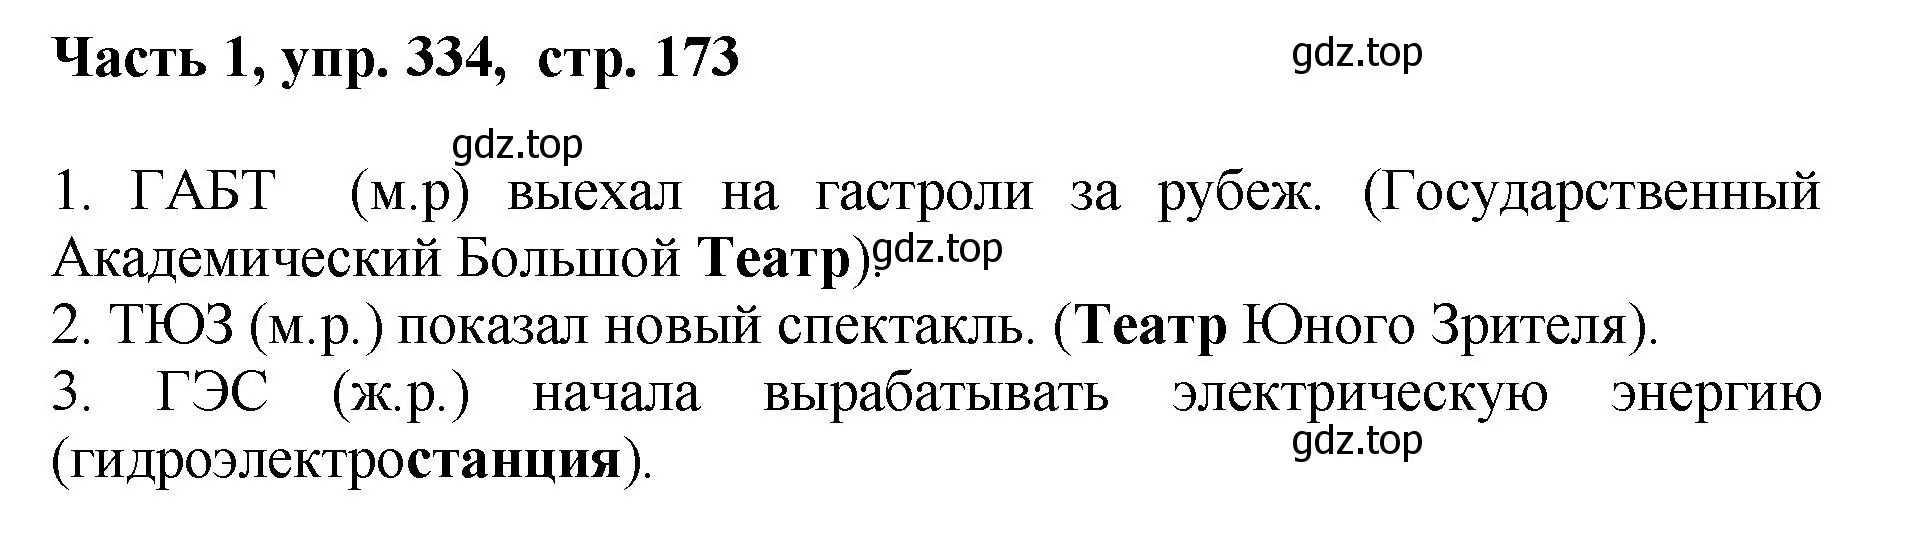 Решение номер 334 (страница 173) гдз по русскому языку 6 класс Баранов, Ладыженская, учебник 1 часть